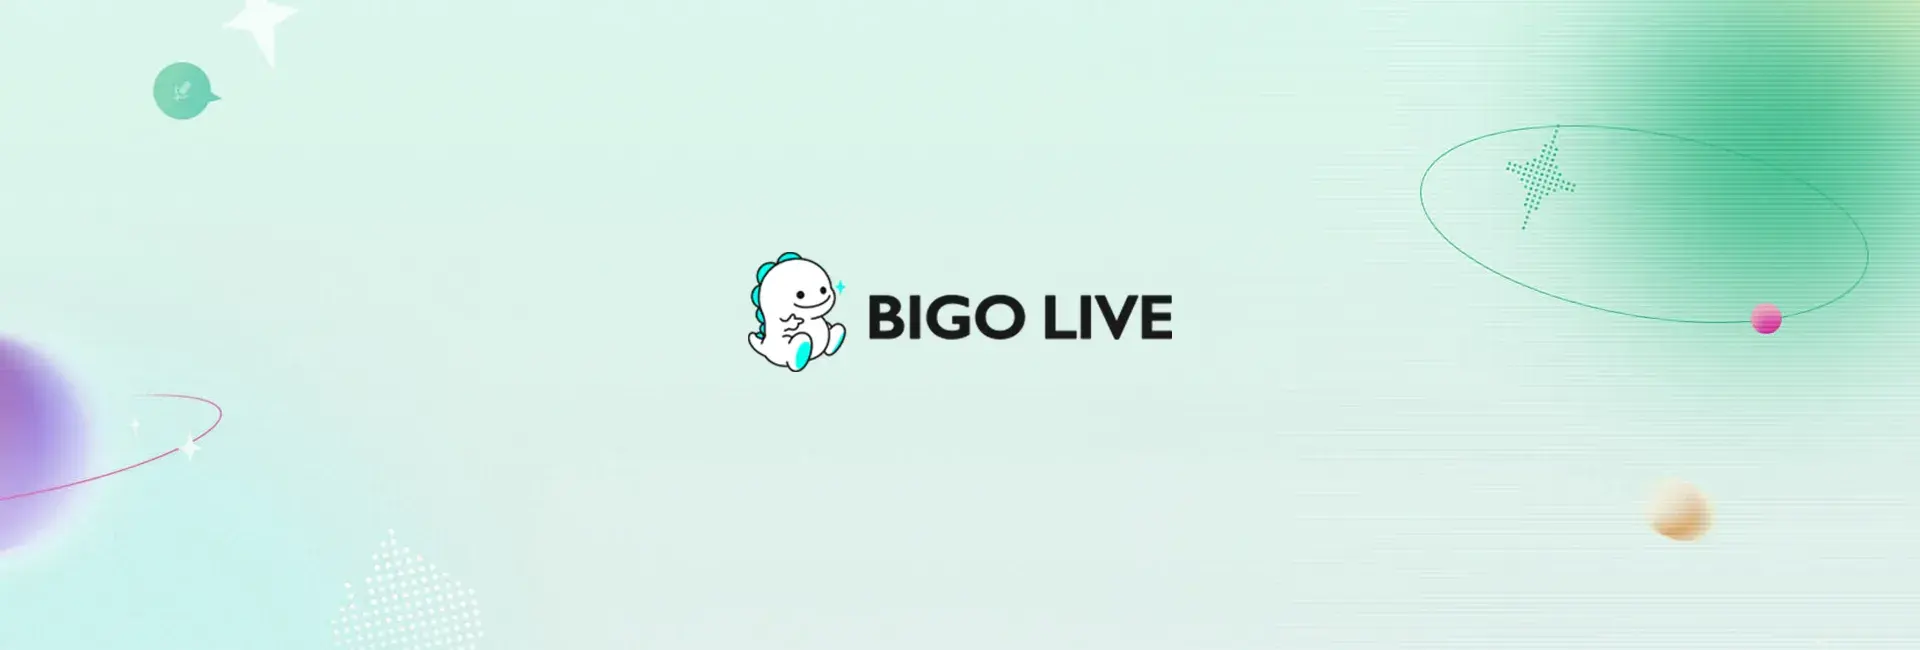 Bigo Live - 40 Diamonds (Global)